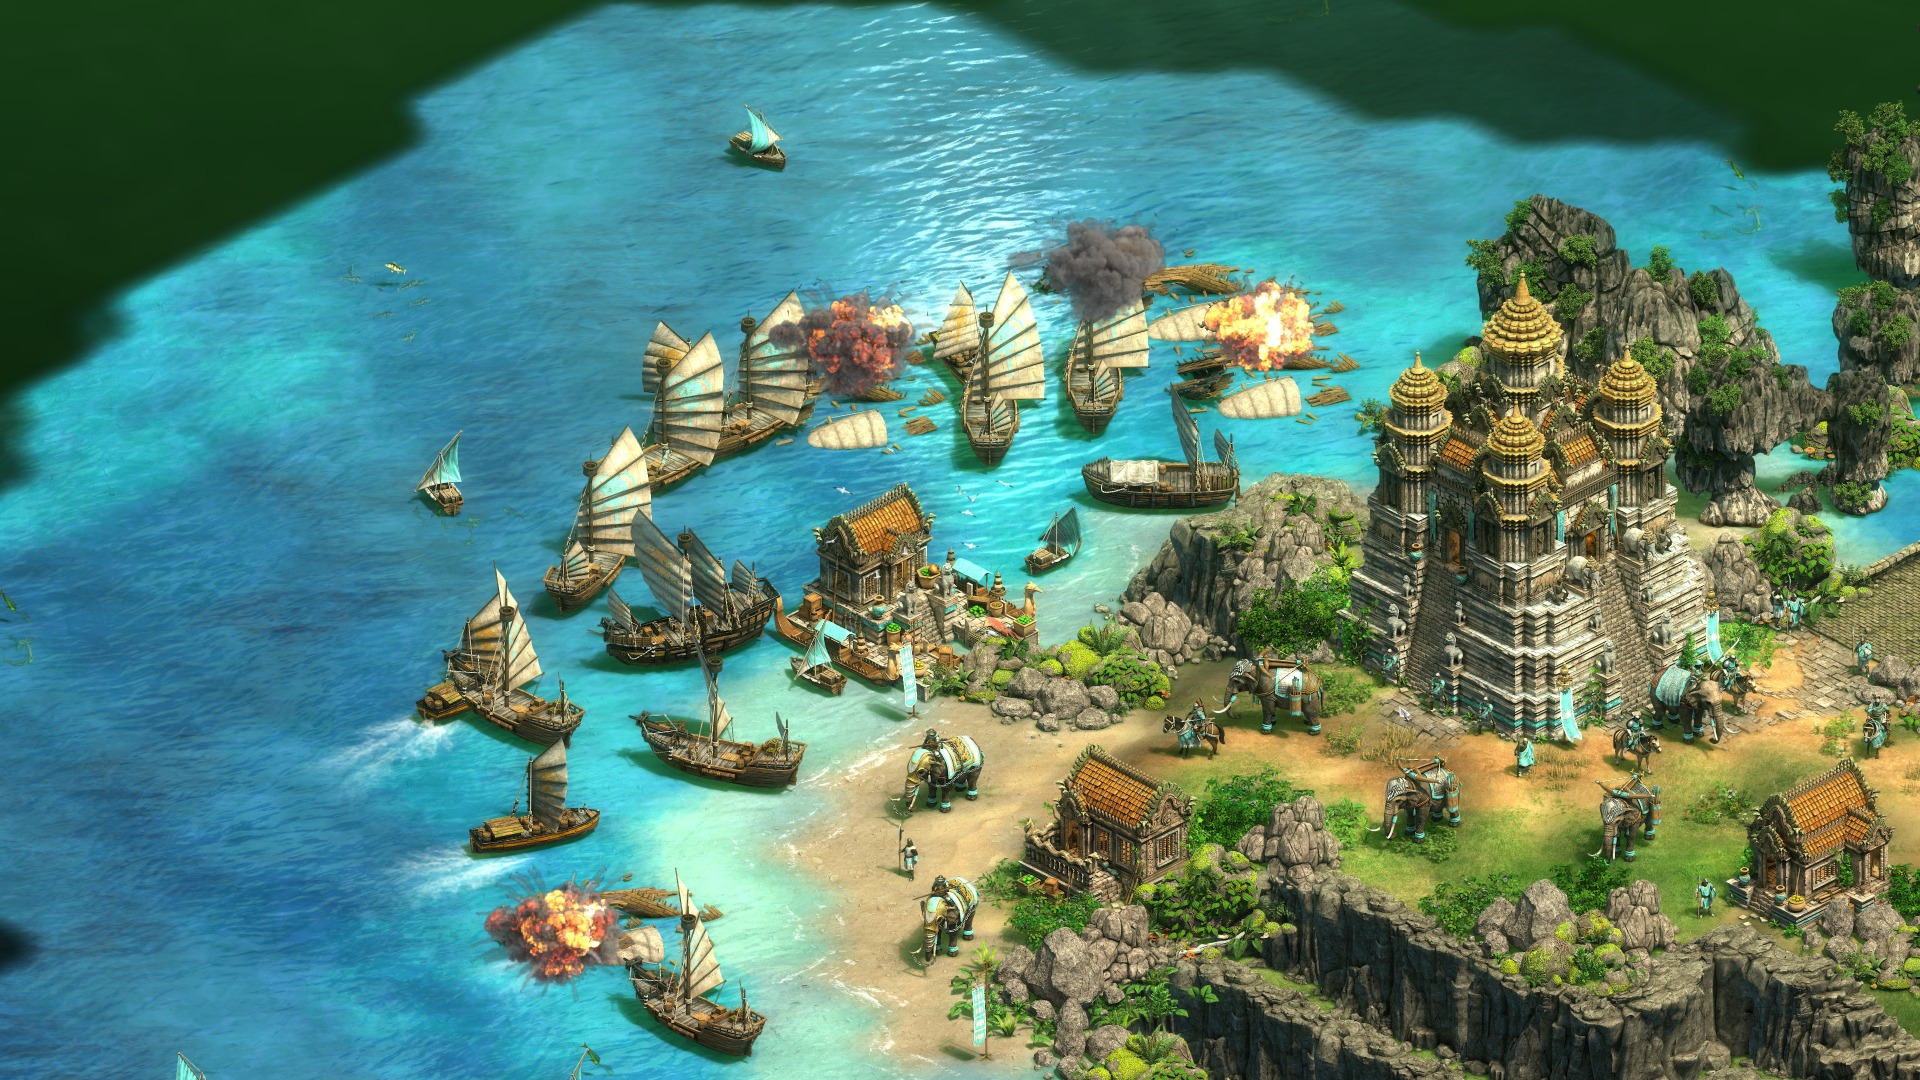 『Age of Empires II』のアジア大会をマイクロソフトが開催へ。日本を含む8地域で2020年第1四半期より約1年にわたりトーナメントが実施予定_001